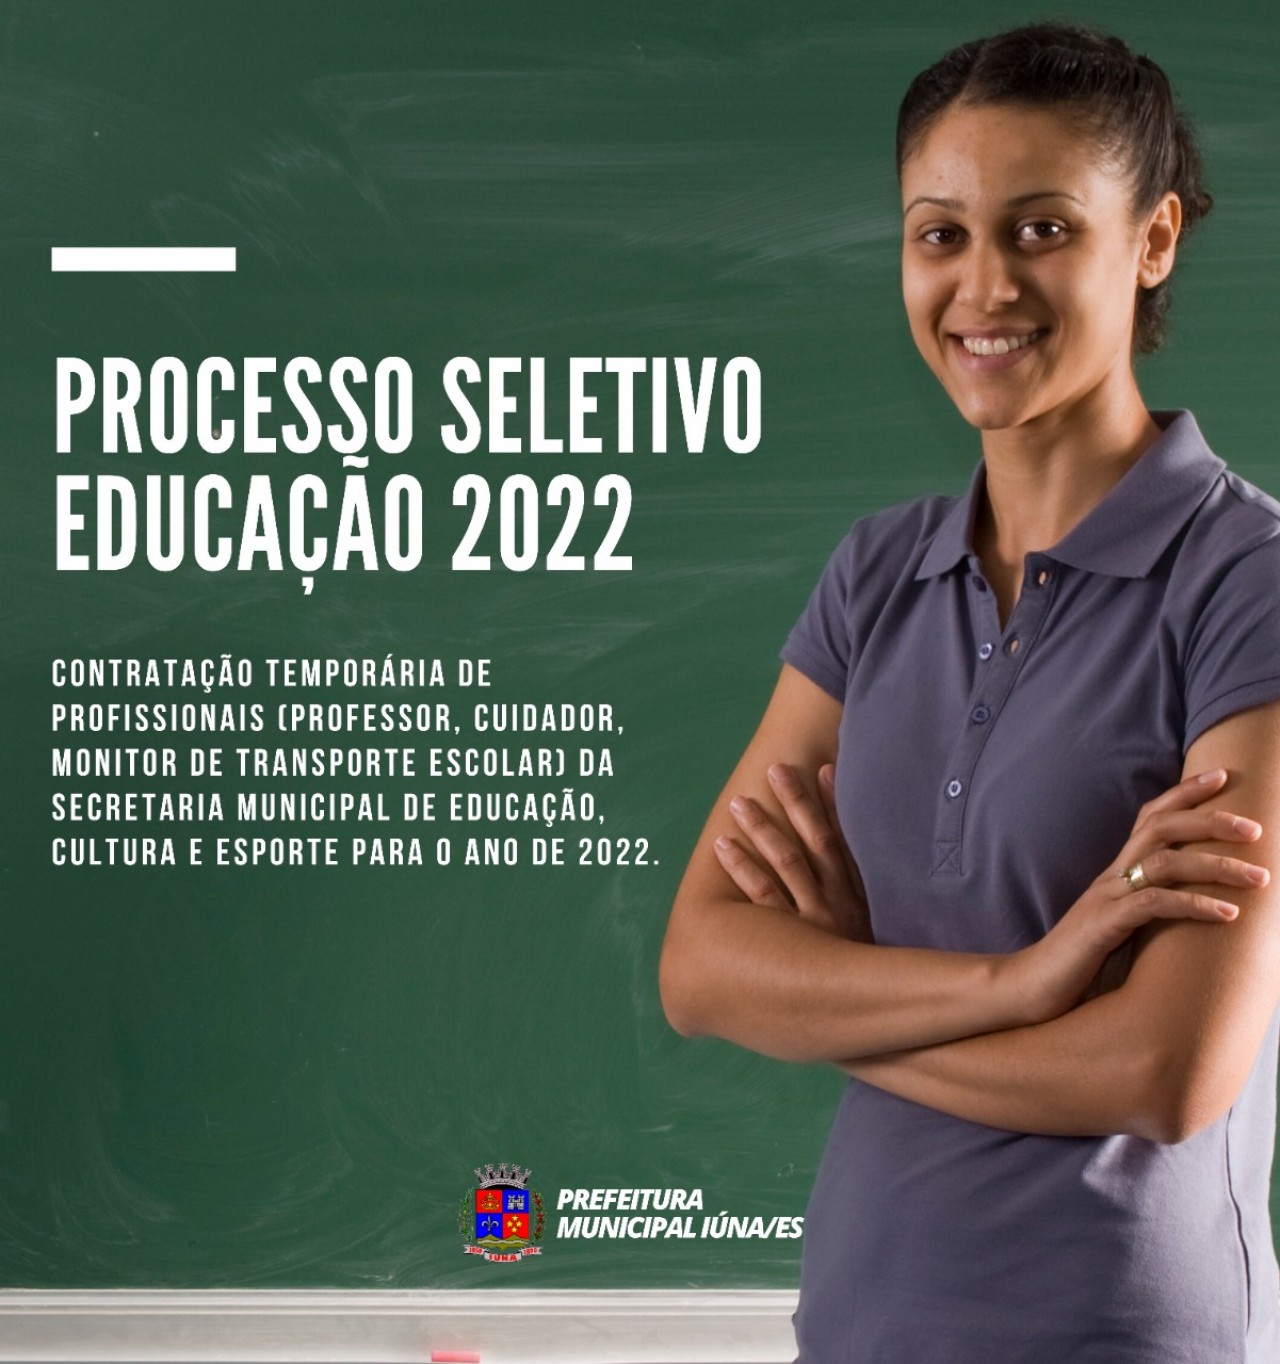 Processo Seletivo Educação 2022